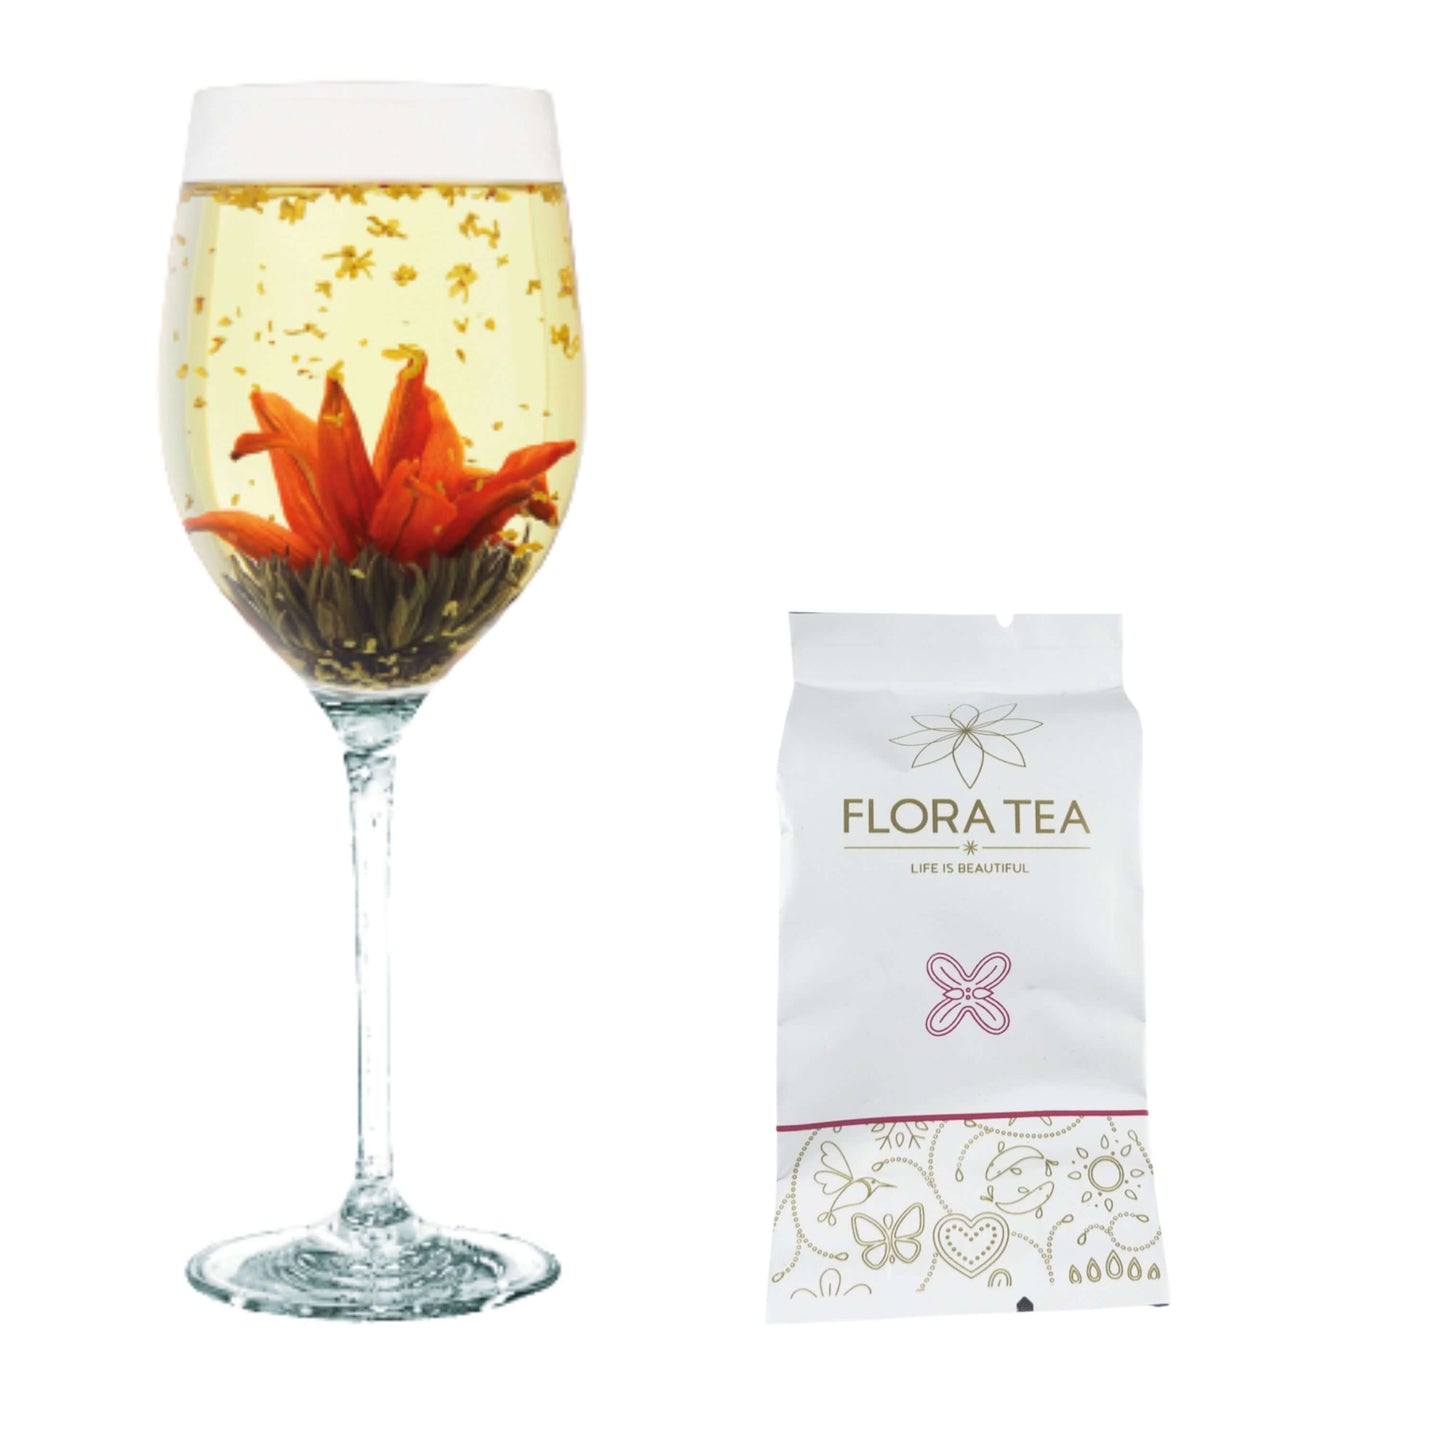 Flora Tea Theebloem Aromatic Mayflower met groene thee, lelie en zoet-geurende osmanthus